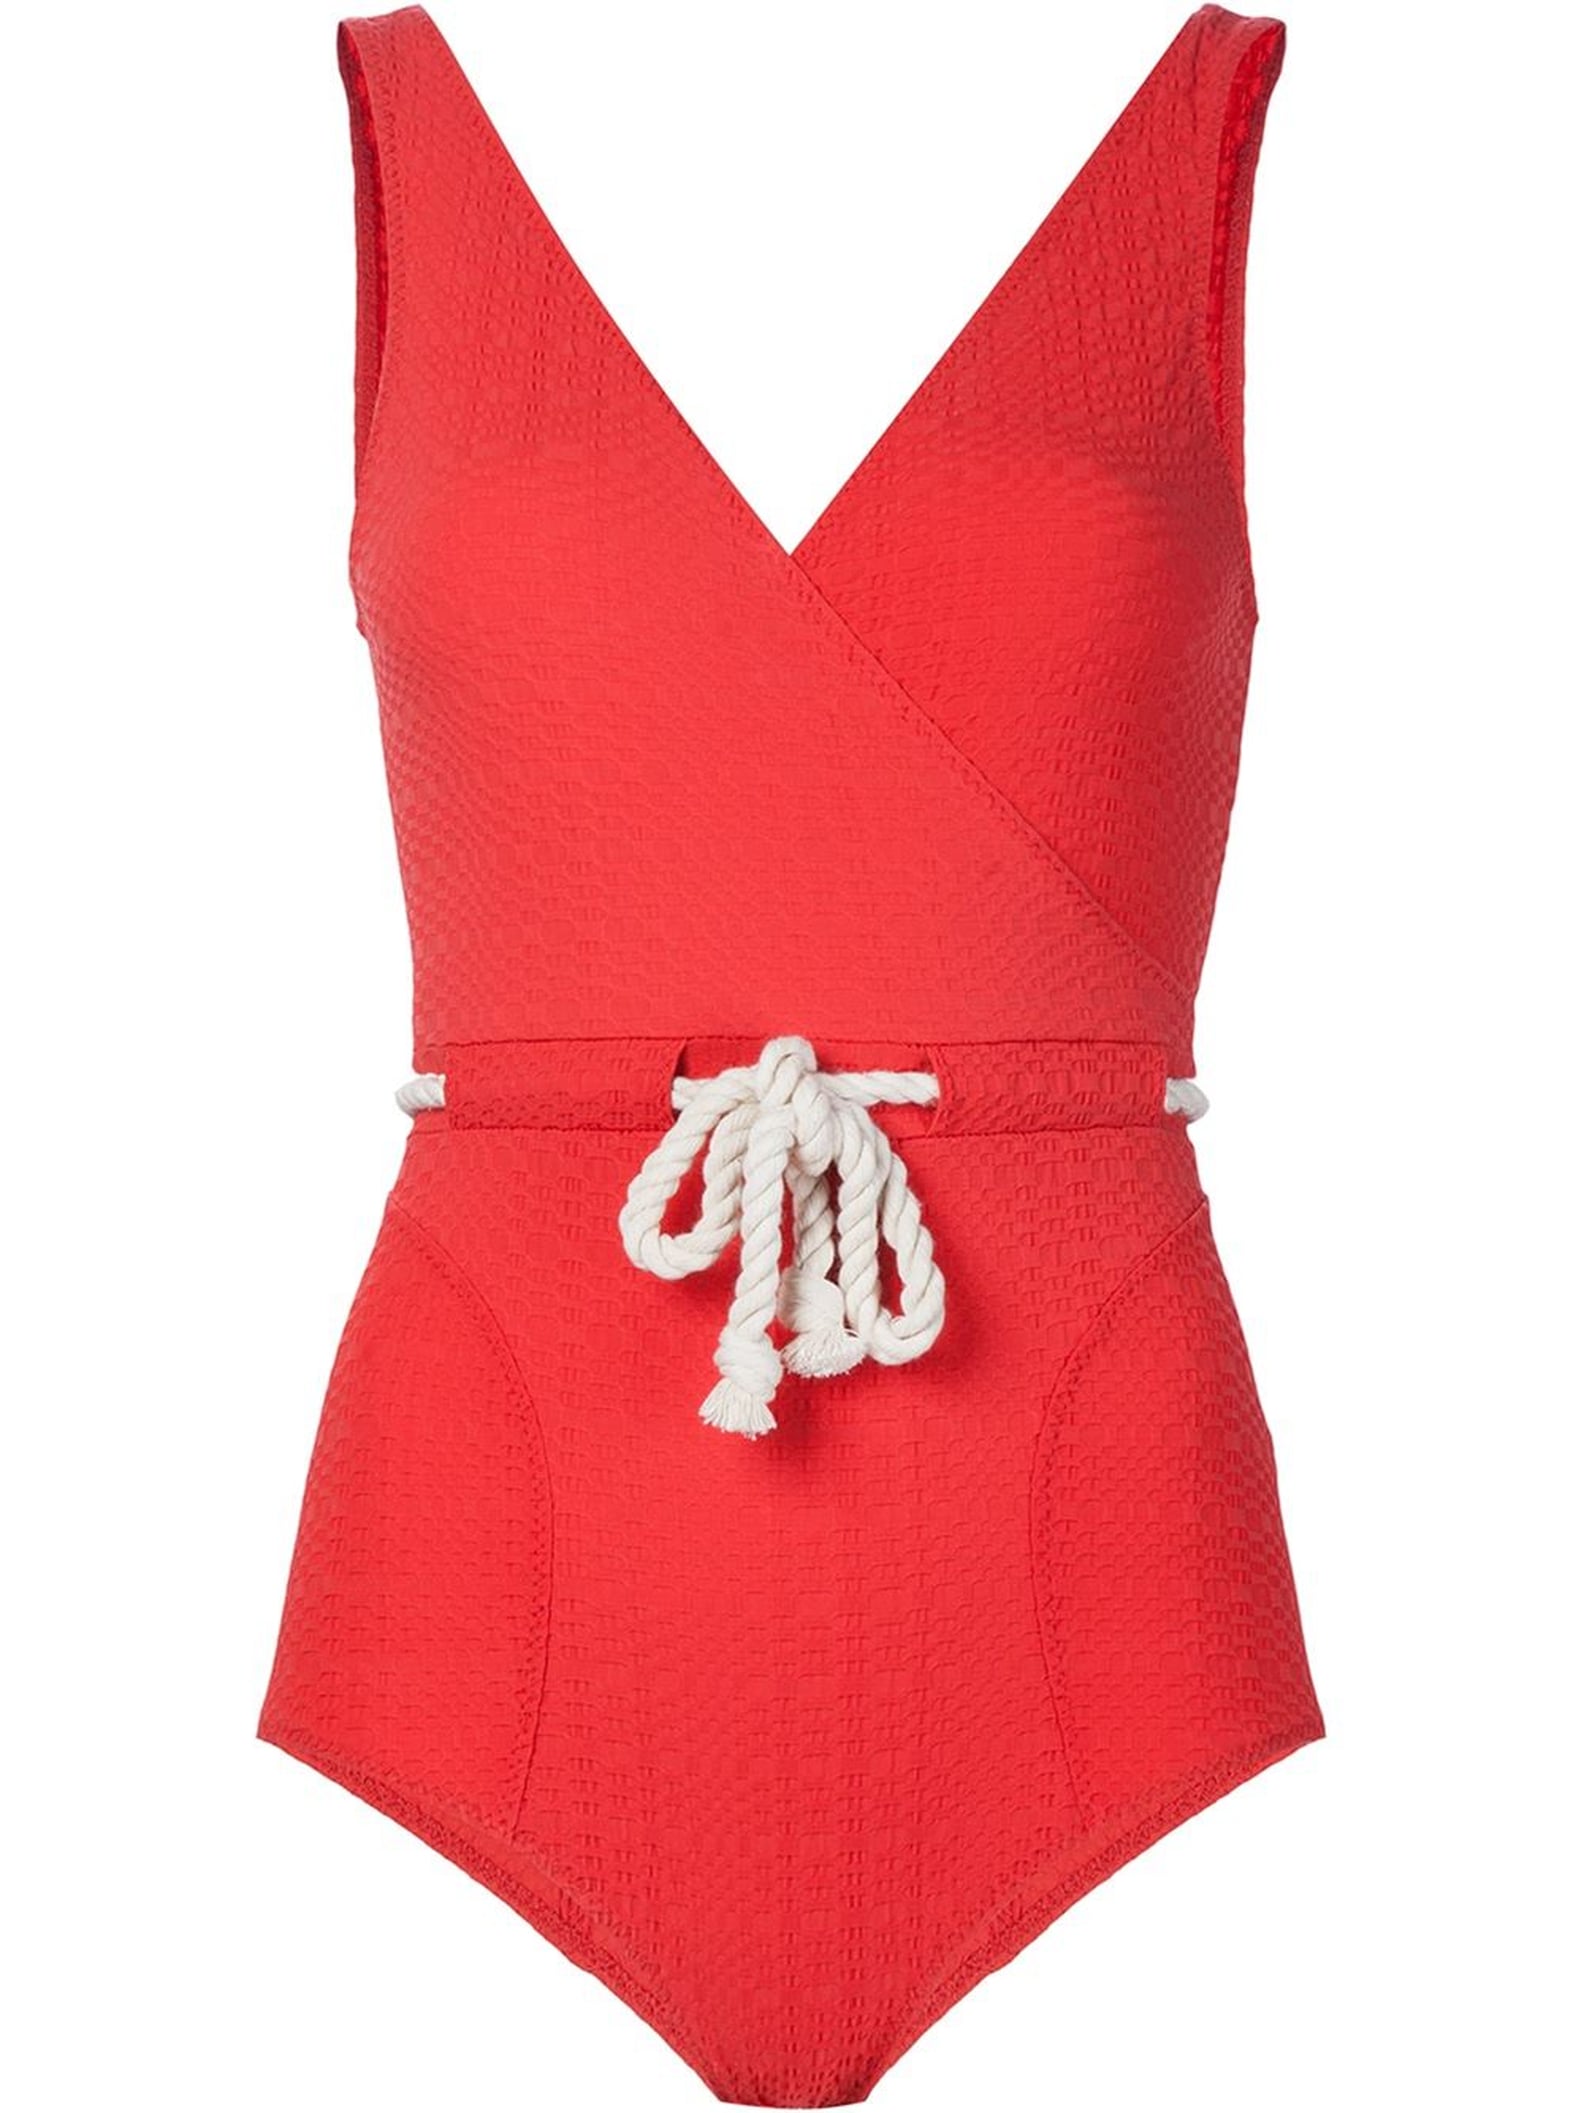 Best Red One-Piece Swimsuits | POPSUGAR Fashion